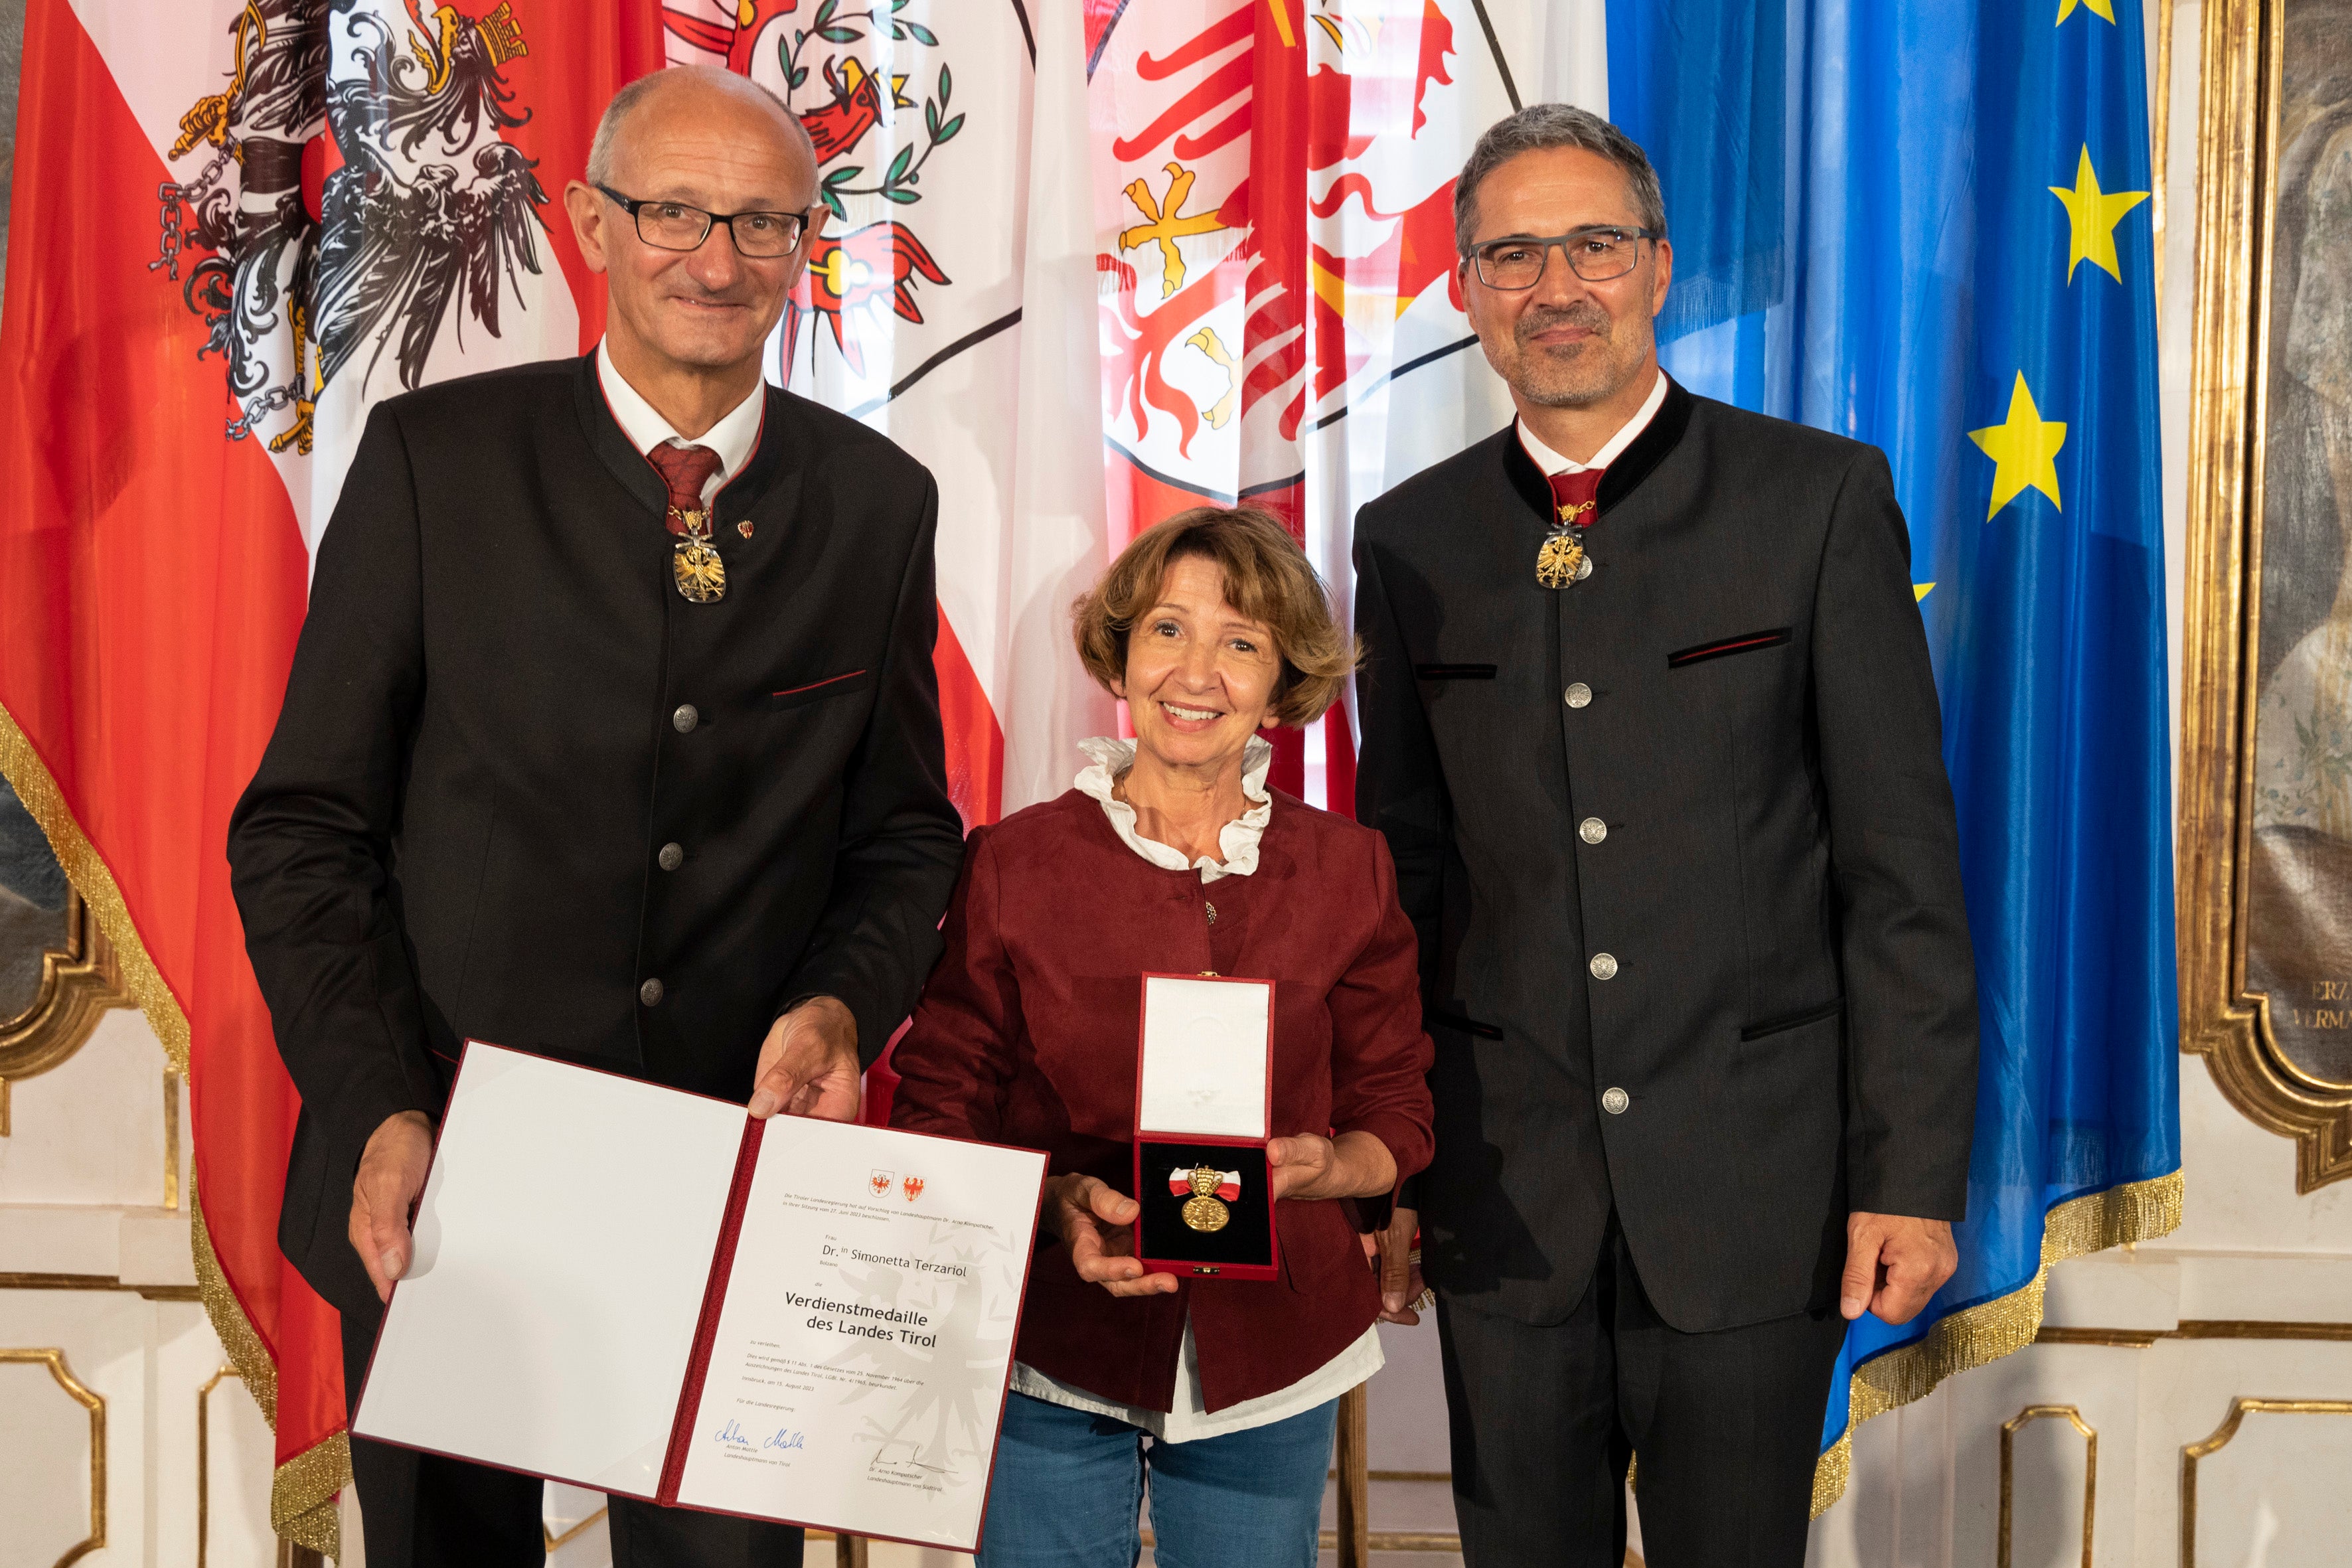 Come molti altri premiati, Simonetta Terzariol (Bolzano) - nella foto con i governatori Mattle (a sinistra) e Kompatscher (a destra) - ha ricevuto la medaglia al merito per il suo forte impegno nel settore sociale.